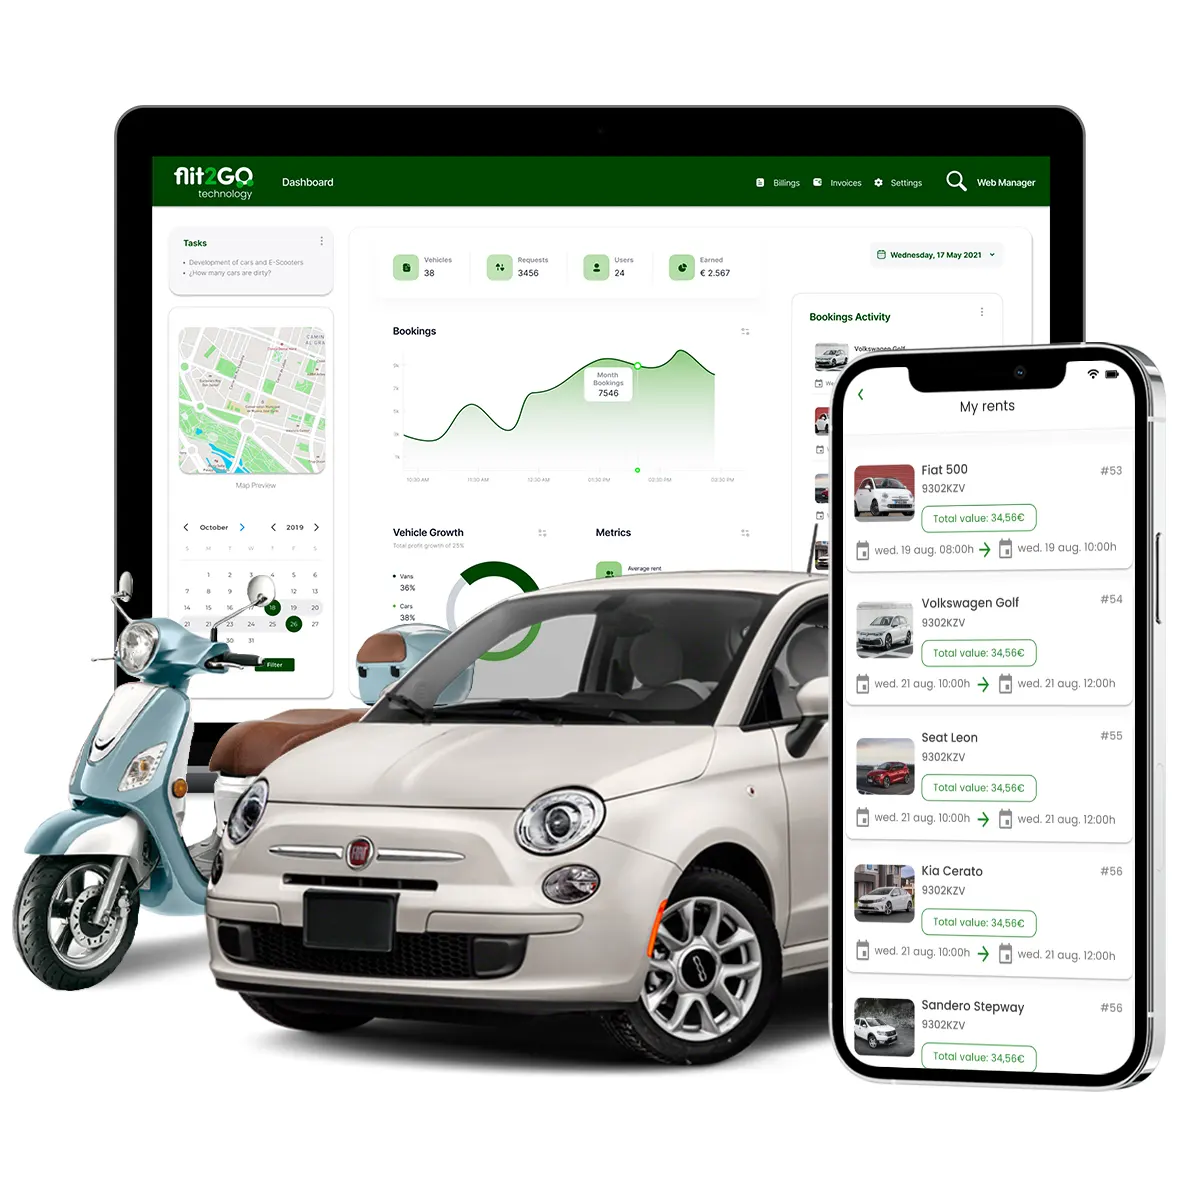 app con software de alquiler de vehículos con recogida y entrega y erp backoffice de gestión de flota